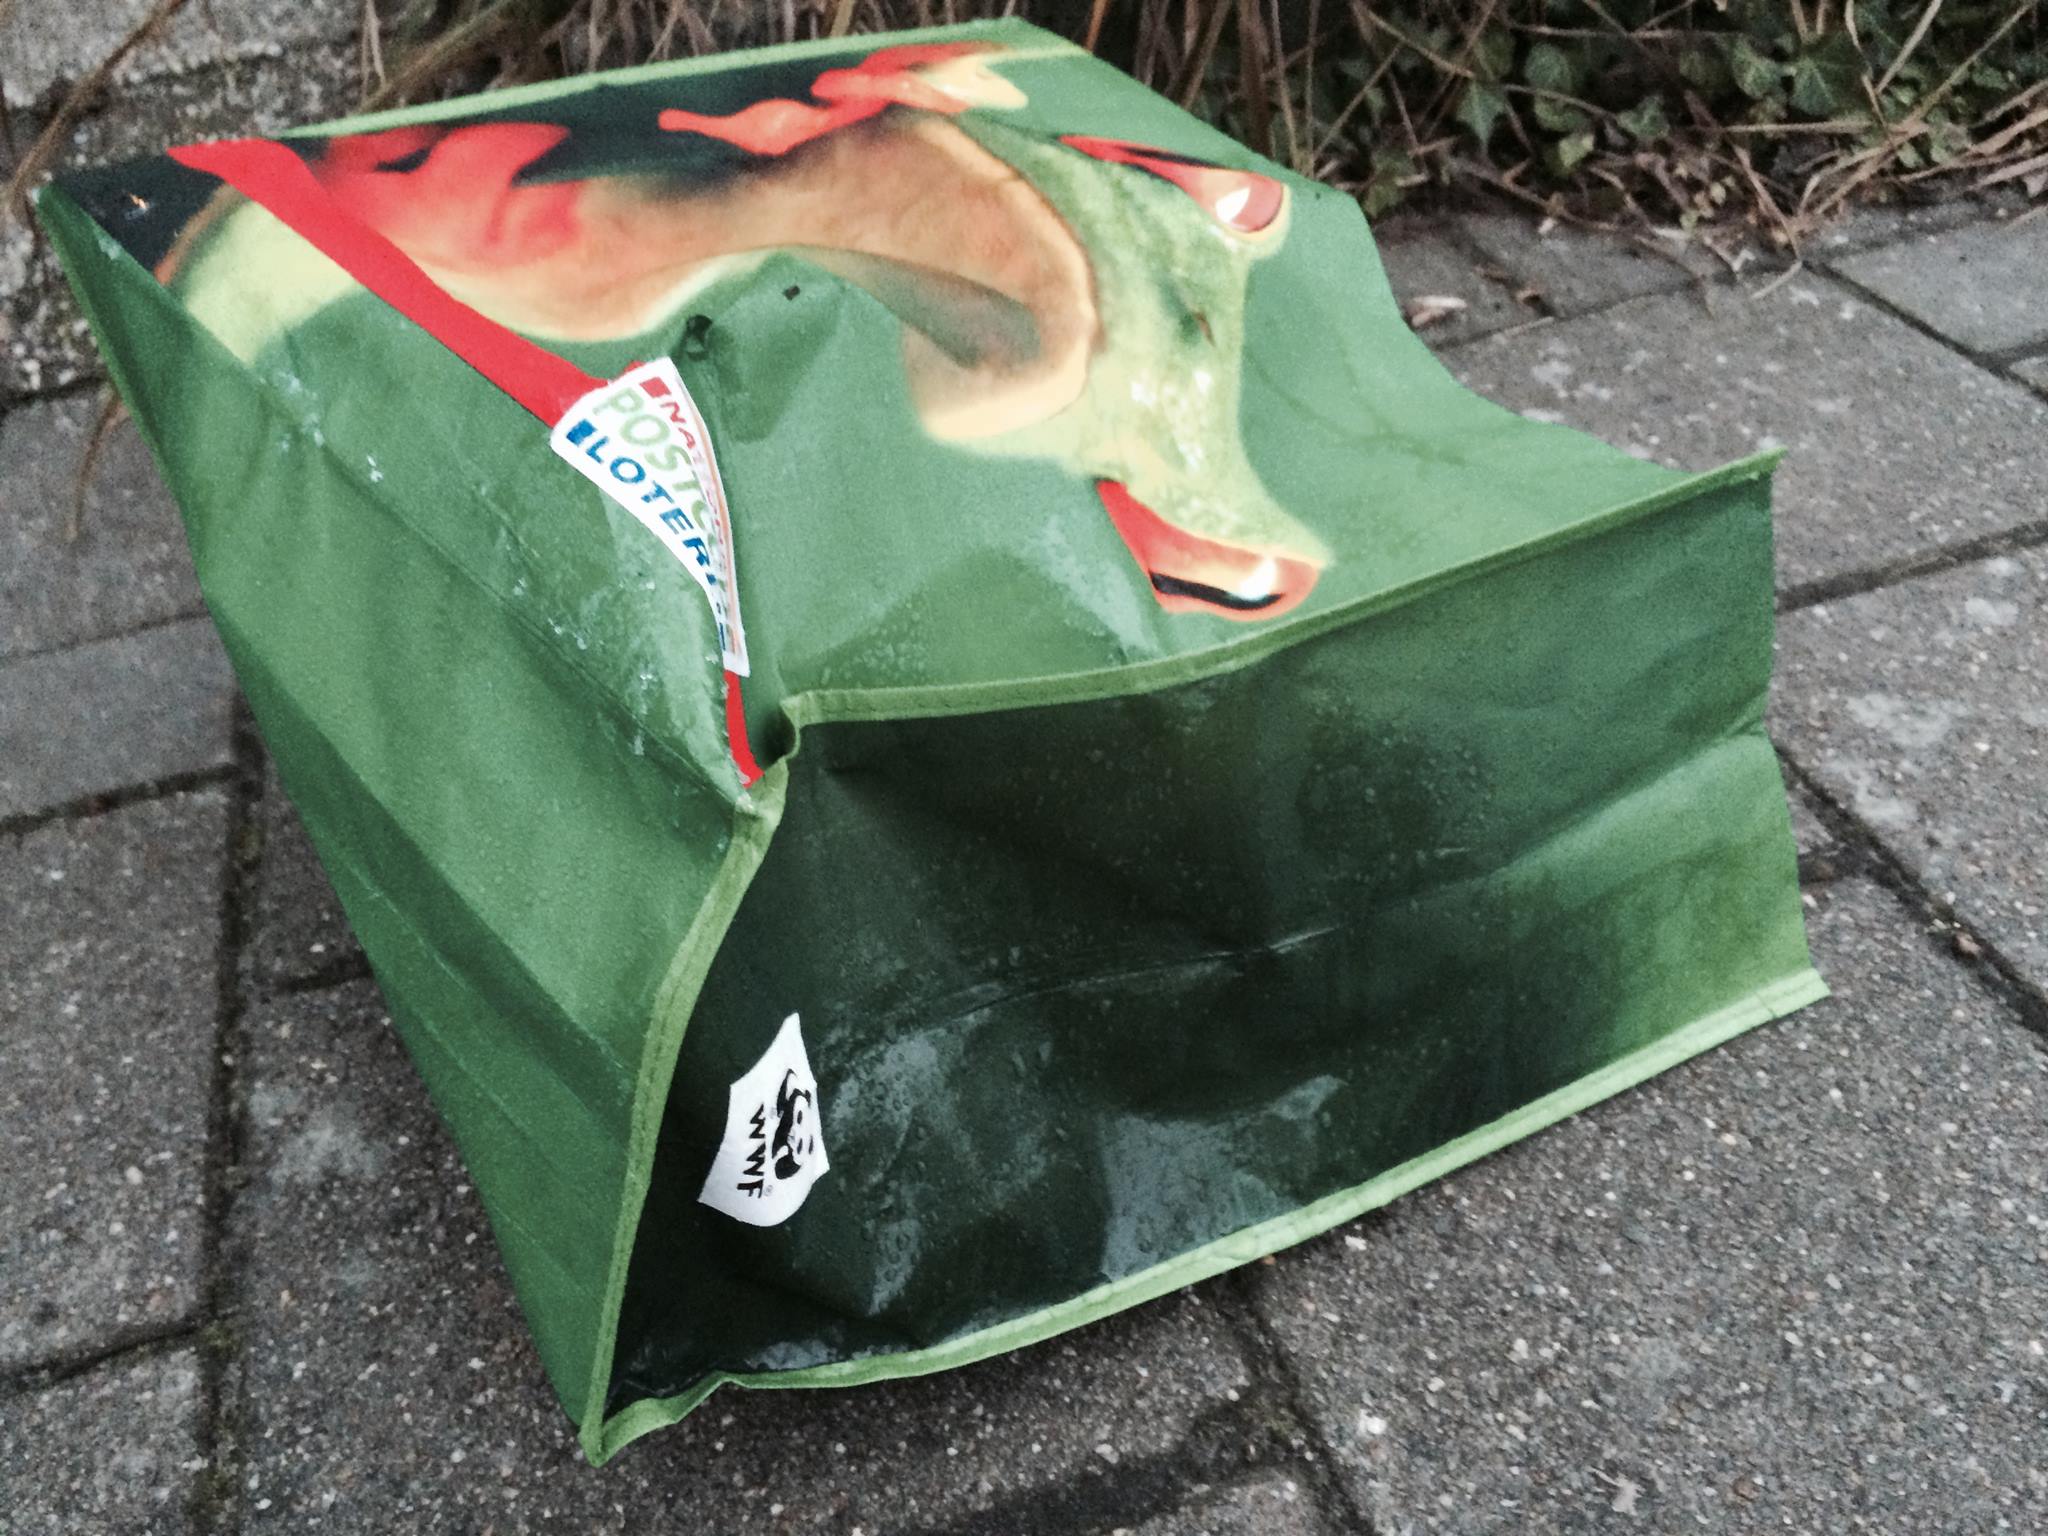 Voor 'het milieu' sponsort de Postcode Loterij een groene tas zwerfvuil met kikkerplaatje en WWF-logo